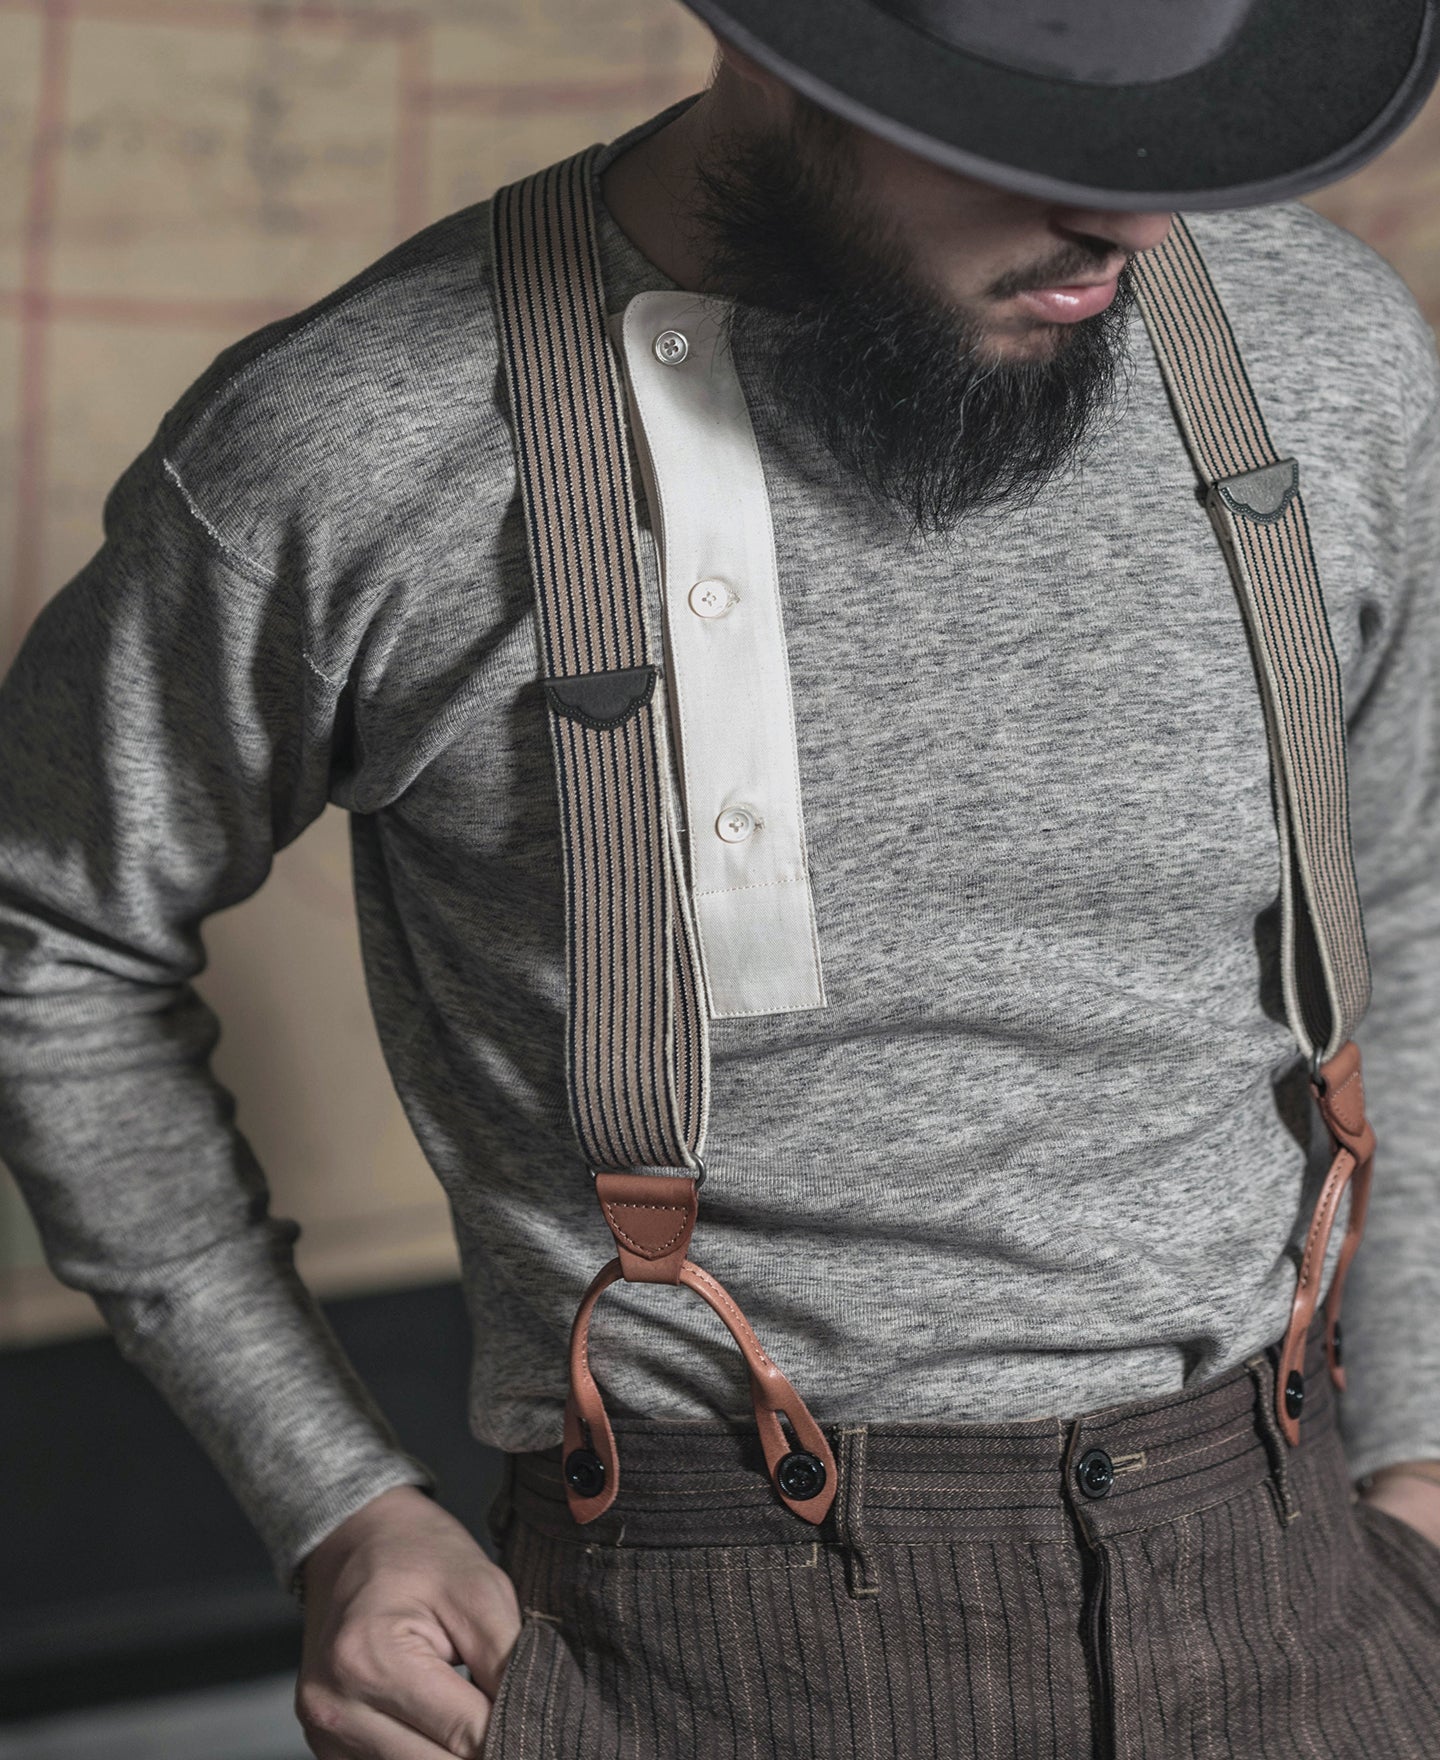 Mens Button Black Leather Braces Adjustable Y Back Suspenders Xlong  Available (Braces)